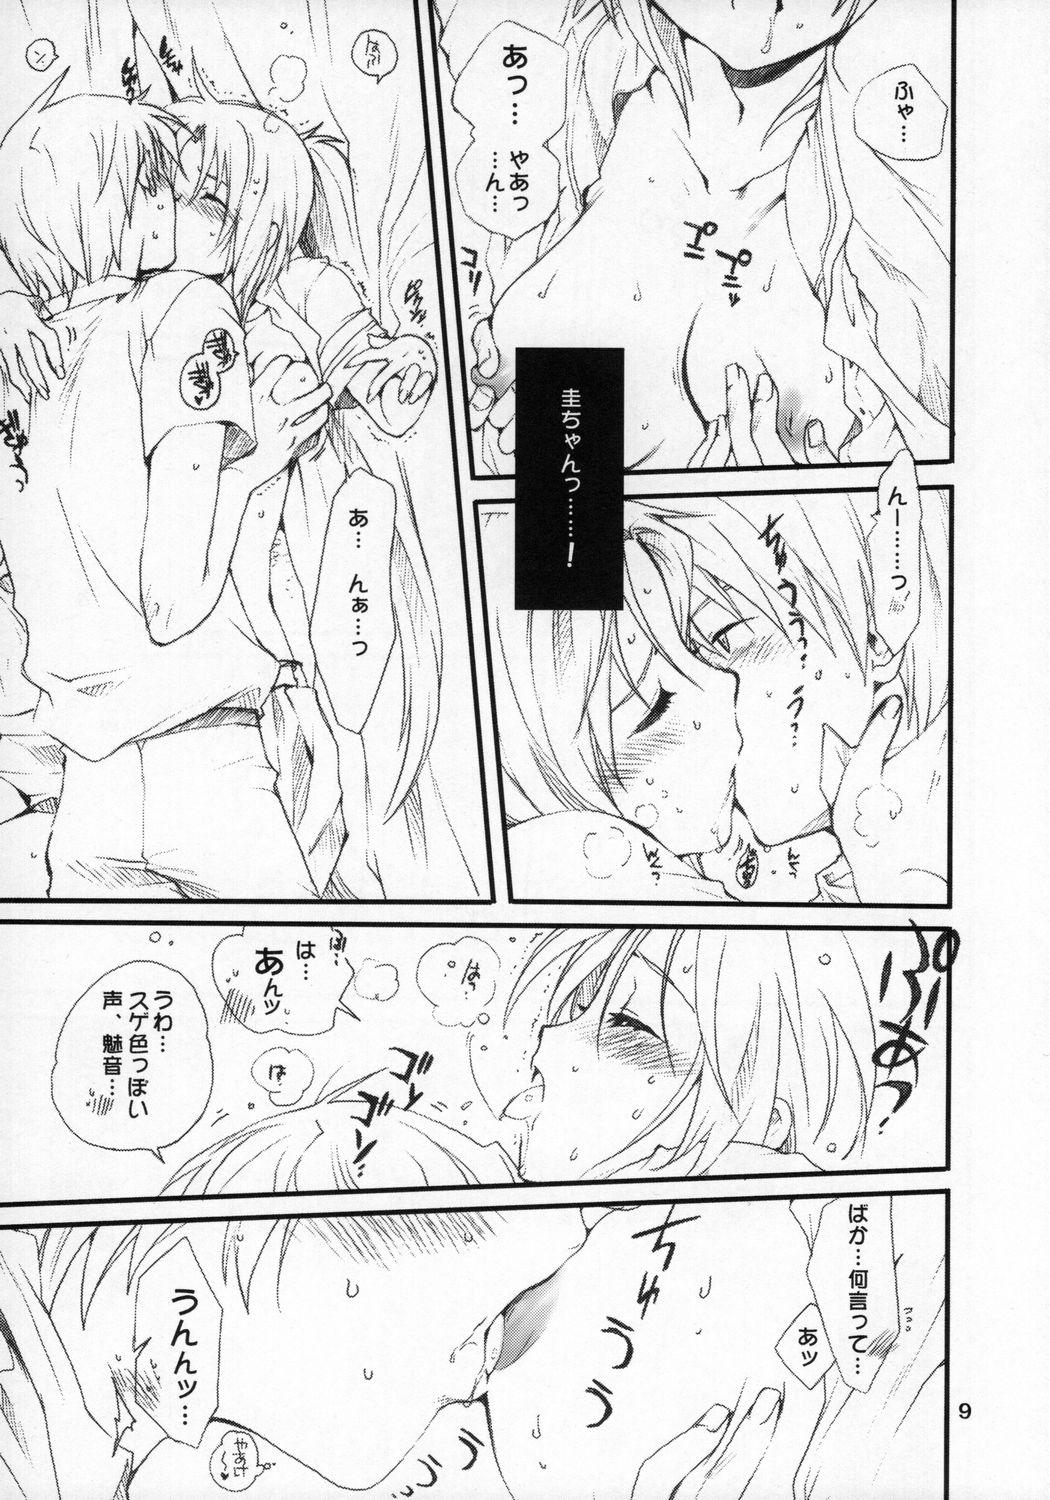 Webcam Mion-san Ganbaru! - Higurashi no naku koro ni Suckingcock - Page 8